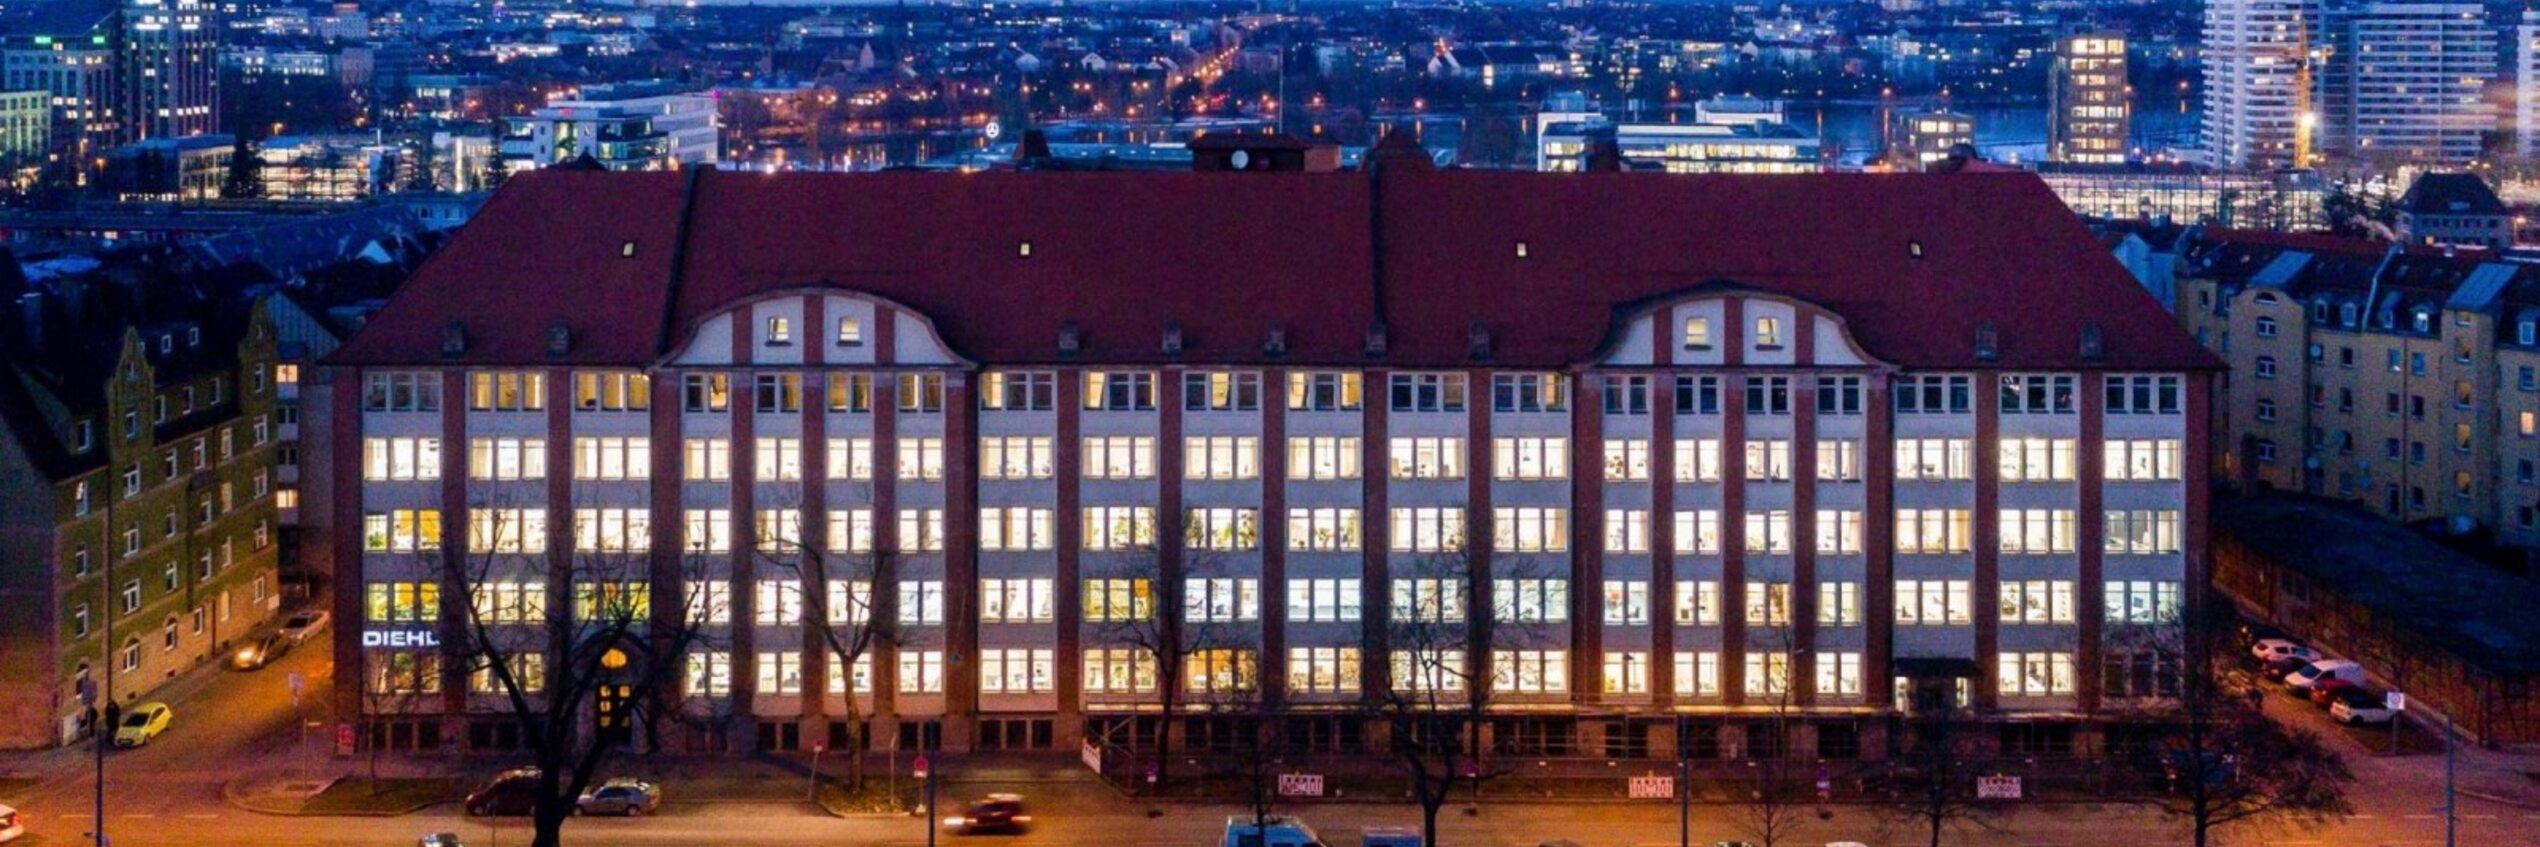 Hauptgebäude der Diehl Gruppe in Nürnberg